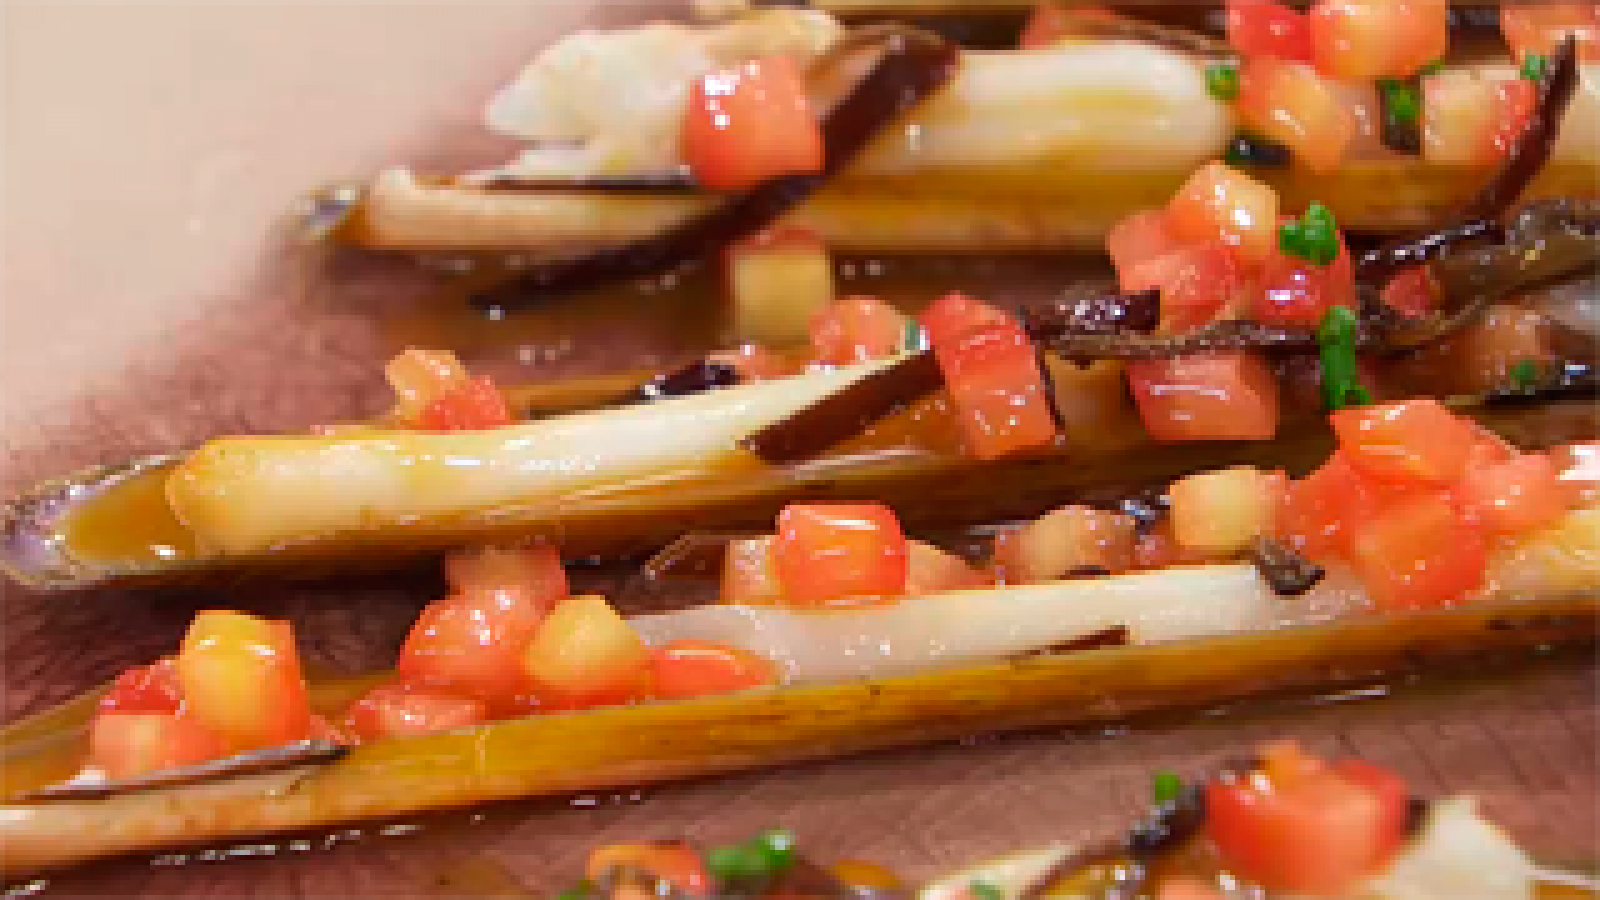 Torres en la cocina - Receta de navajas con salsa de asado